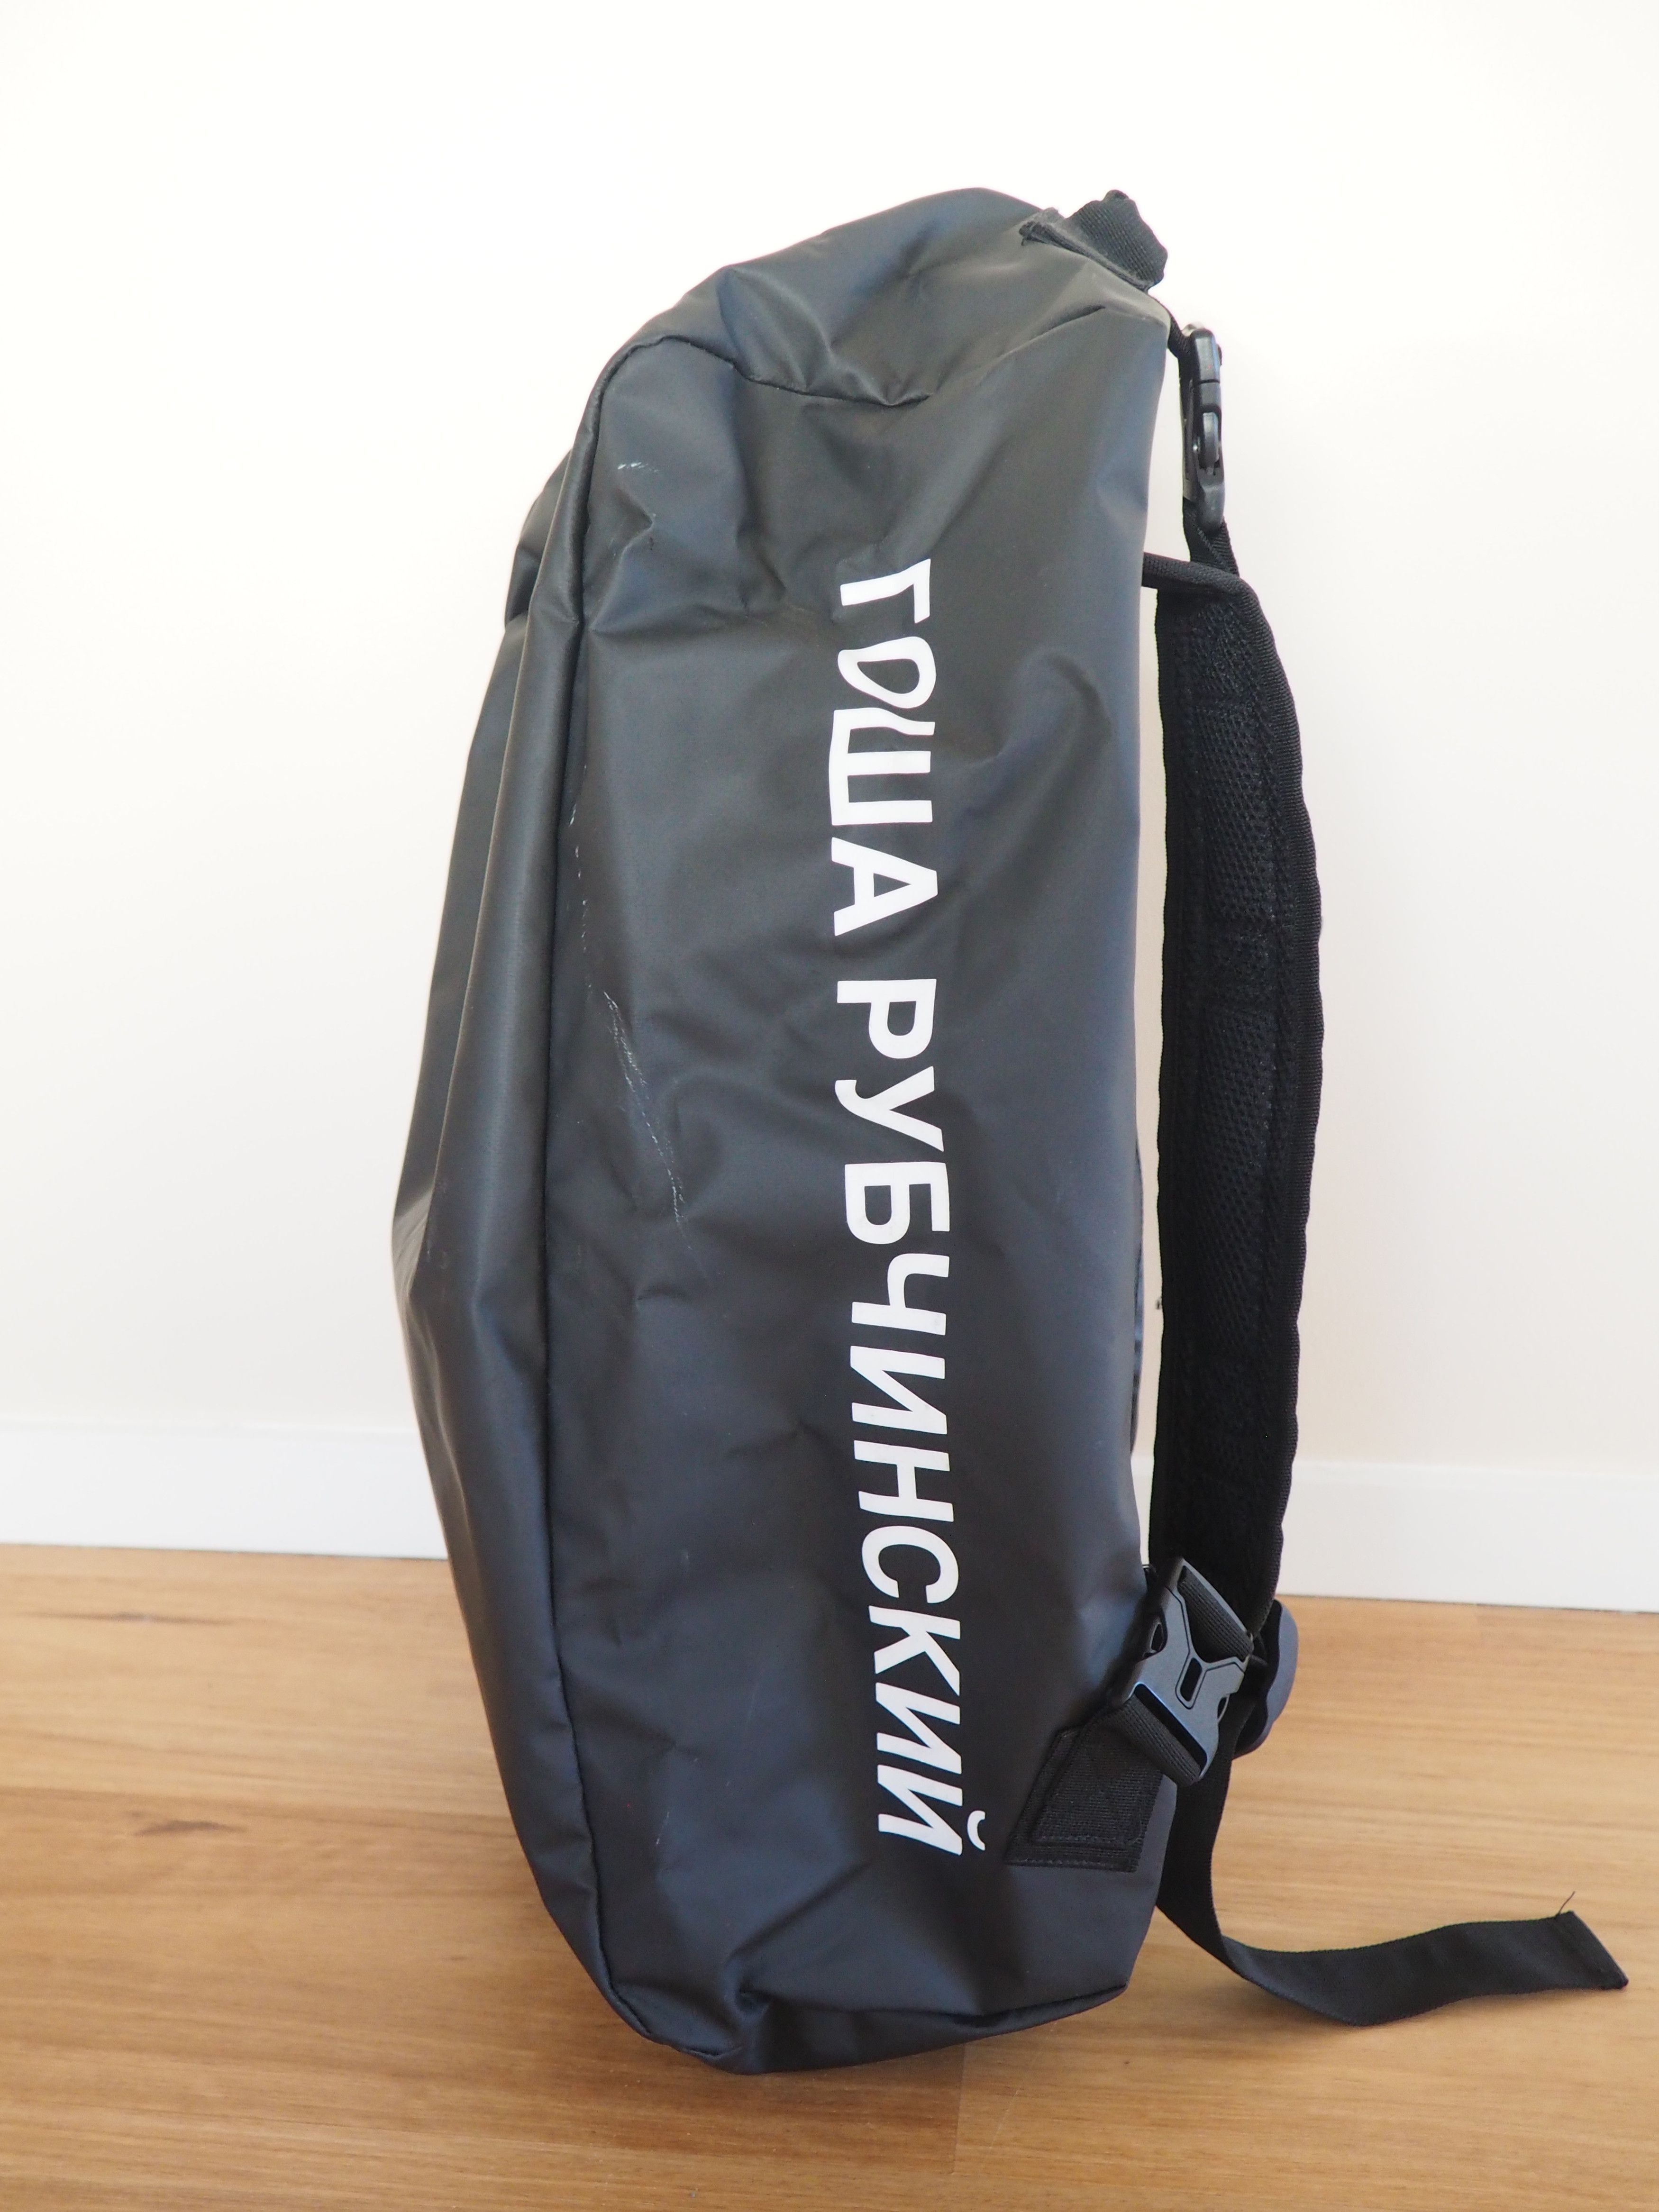 新規購入 新品未使用 GOSHA rubchinski RUBCHINSKIY Kappa backpack GRAPHIC バッグ